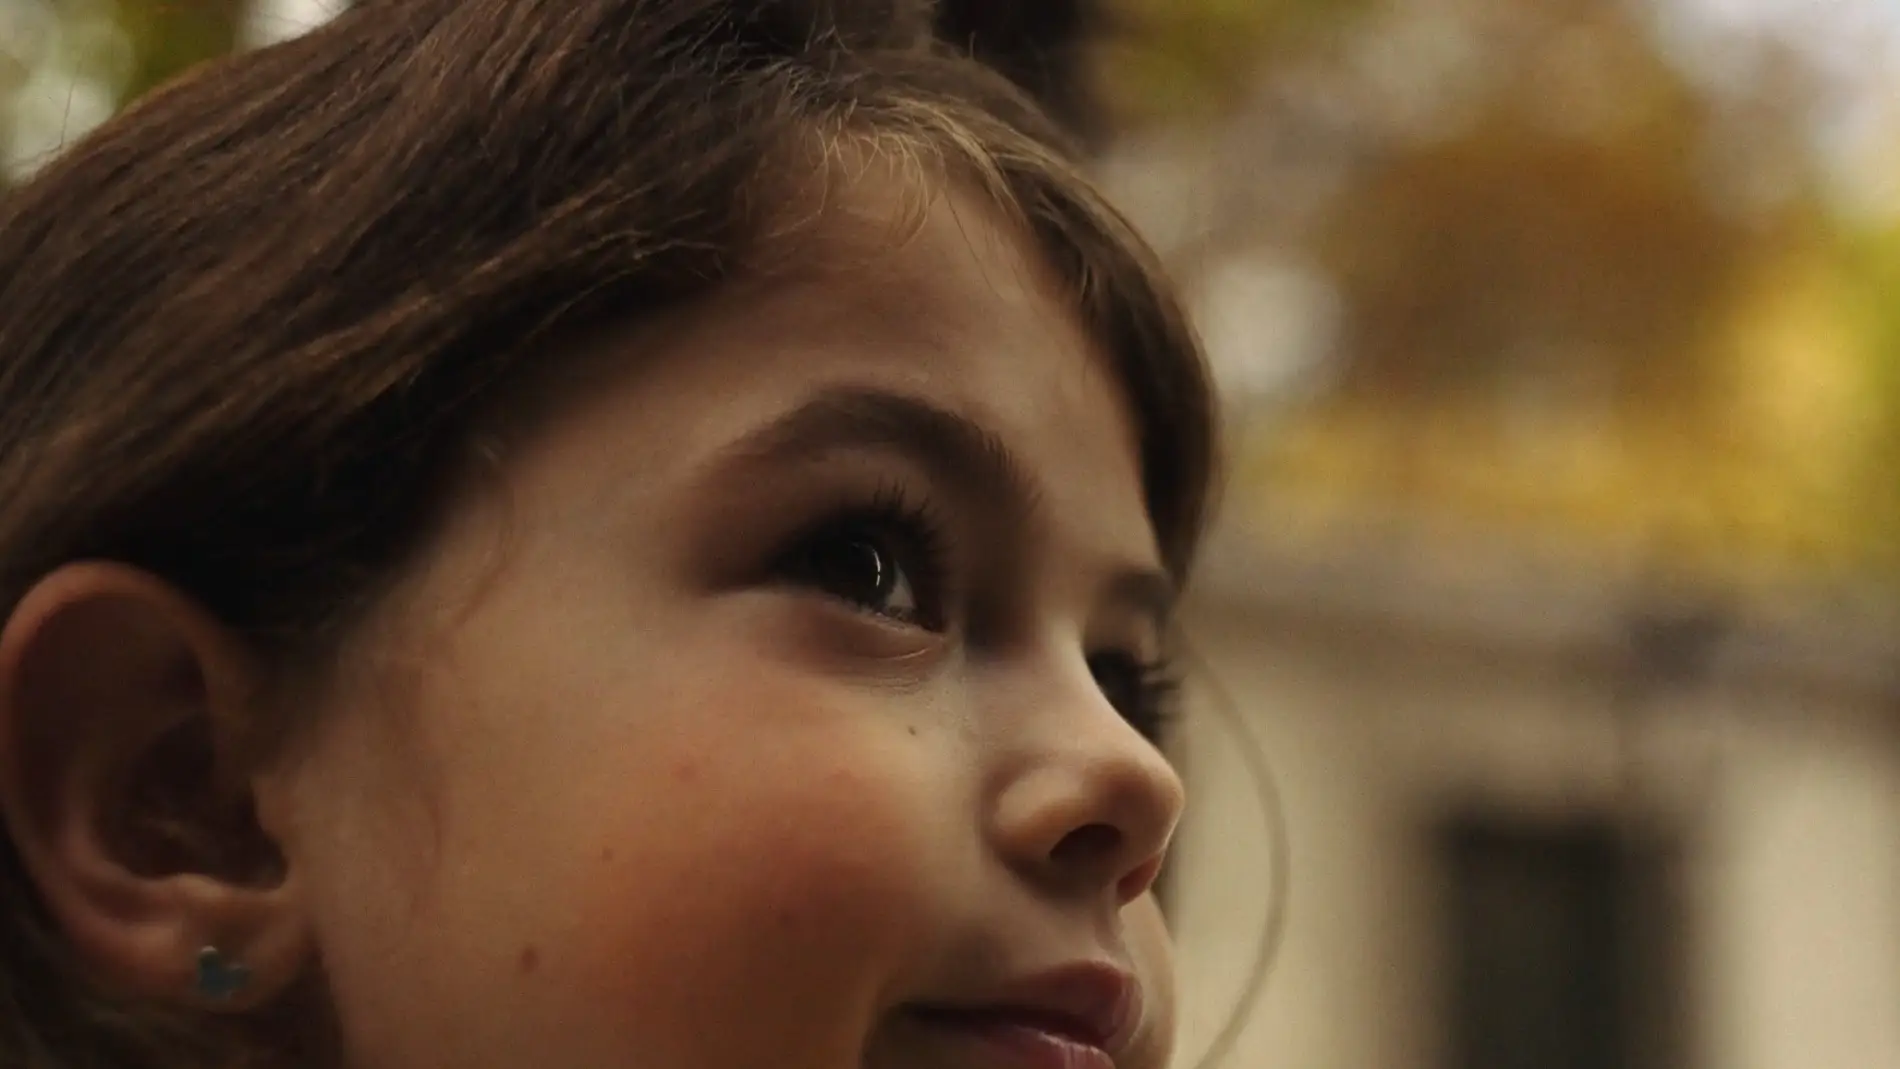 Aldeas Infantiles SOS lanza la campaña  “Busco casa con familia